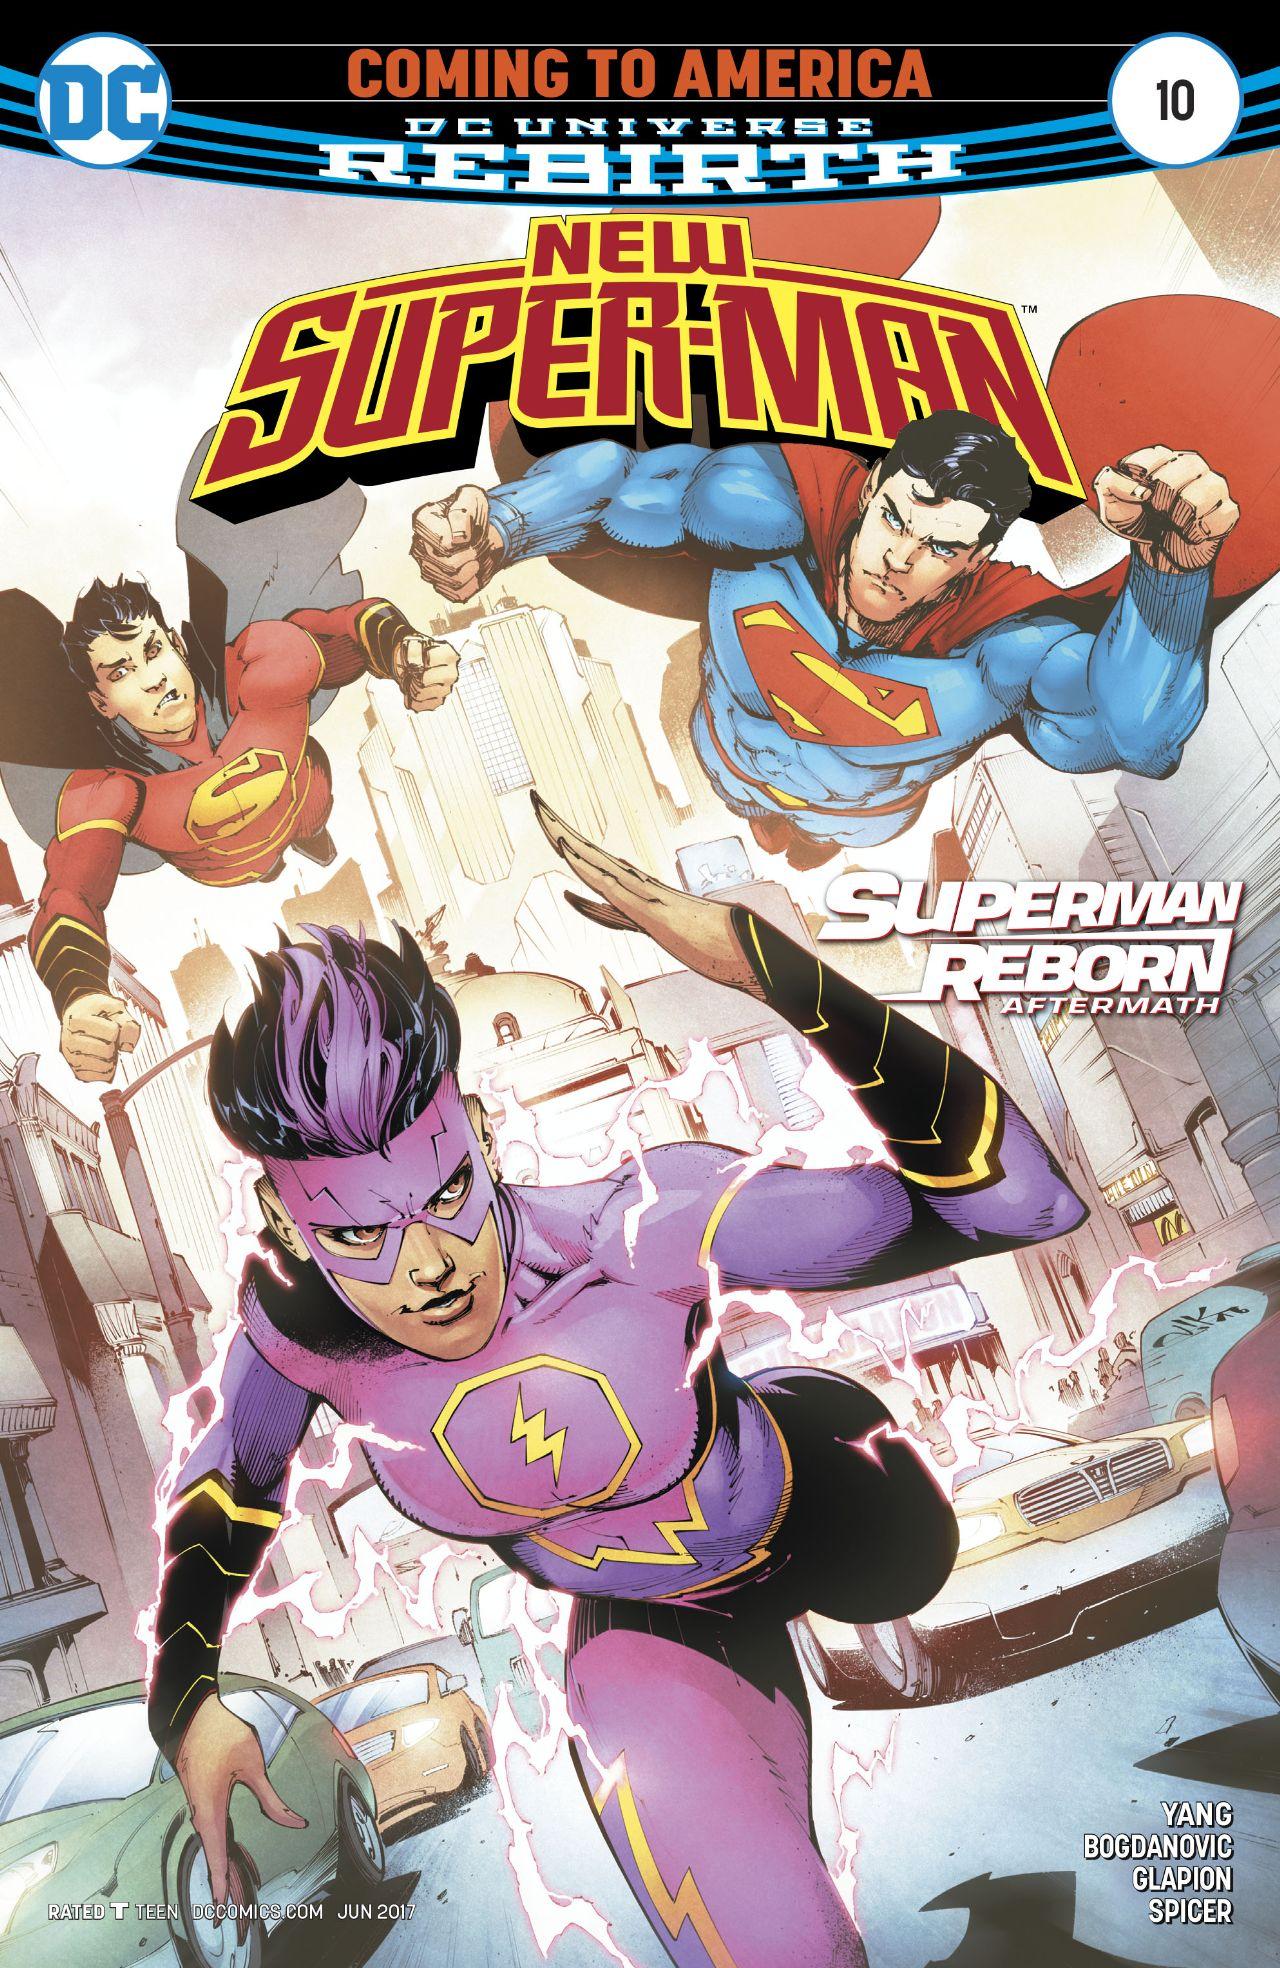 New Super-Man Vol. 1 #10